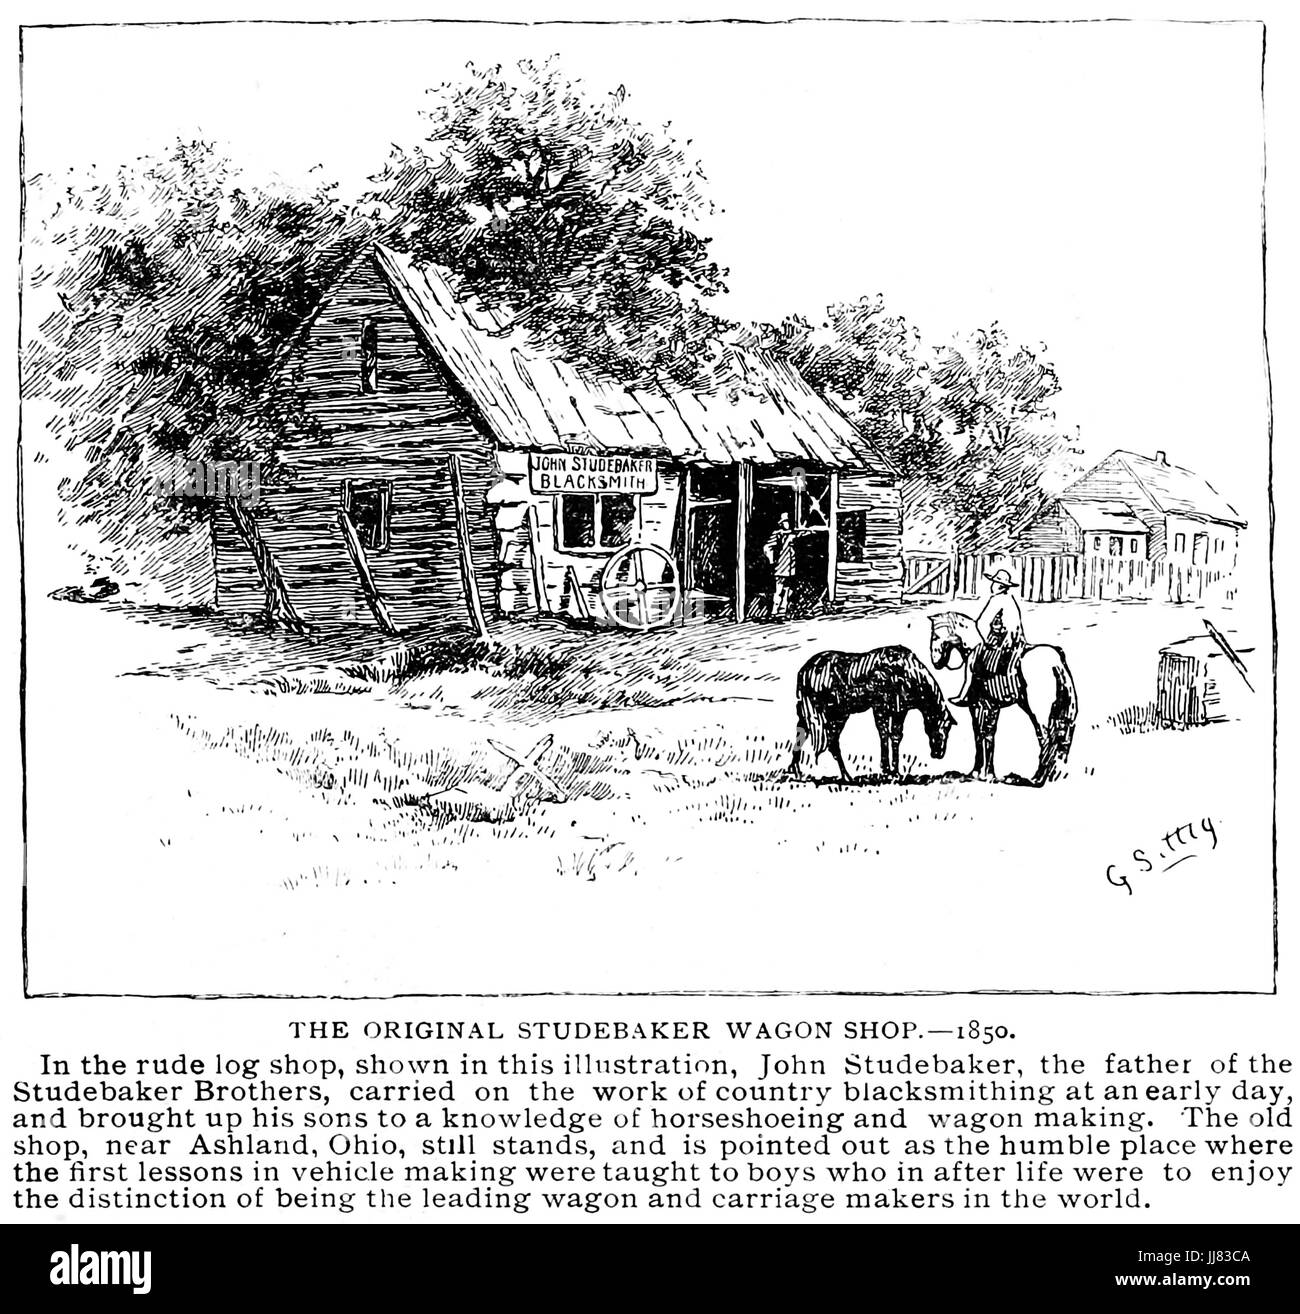 Une gravure de 1893 STUDEBAKER Studebaker John's wagon original boutique près de Ashland, Ohio, en 1850 Banque D'Images